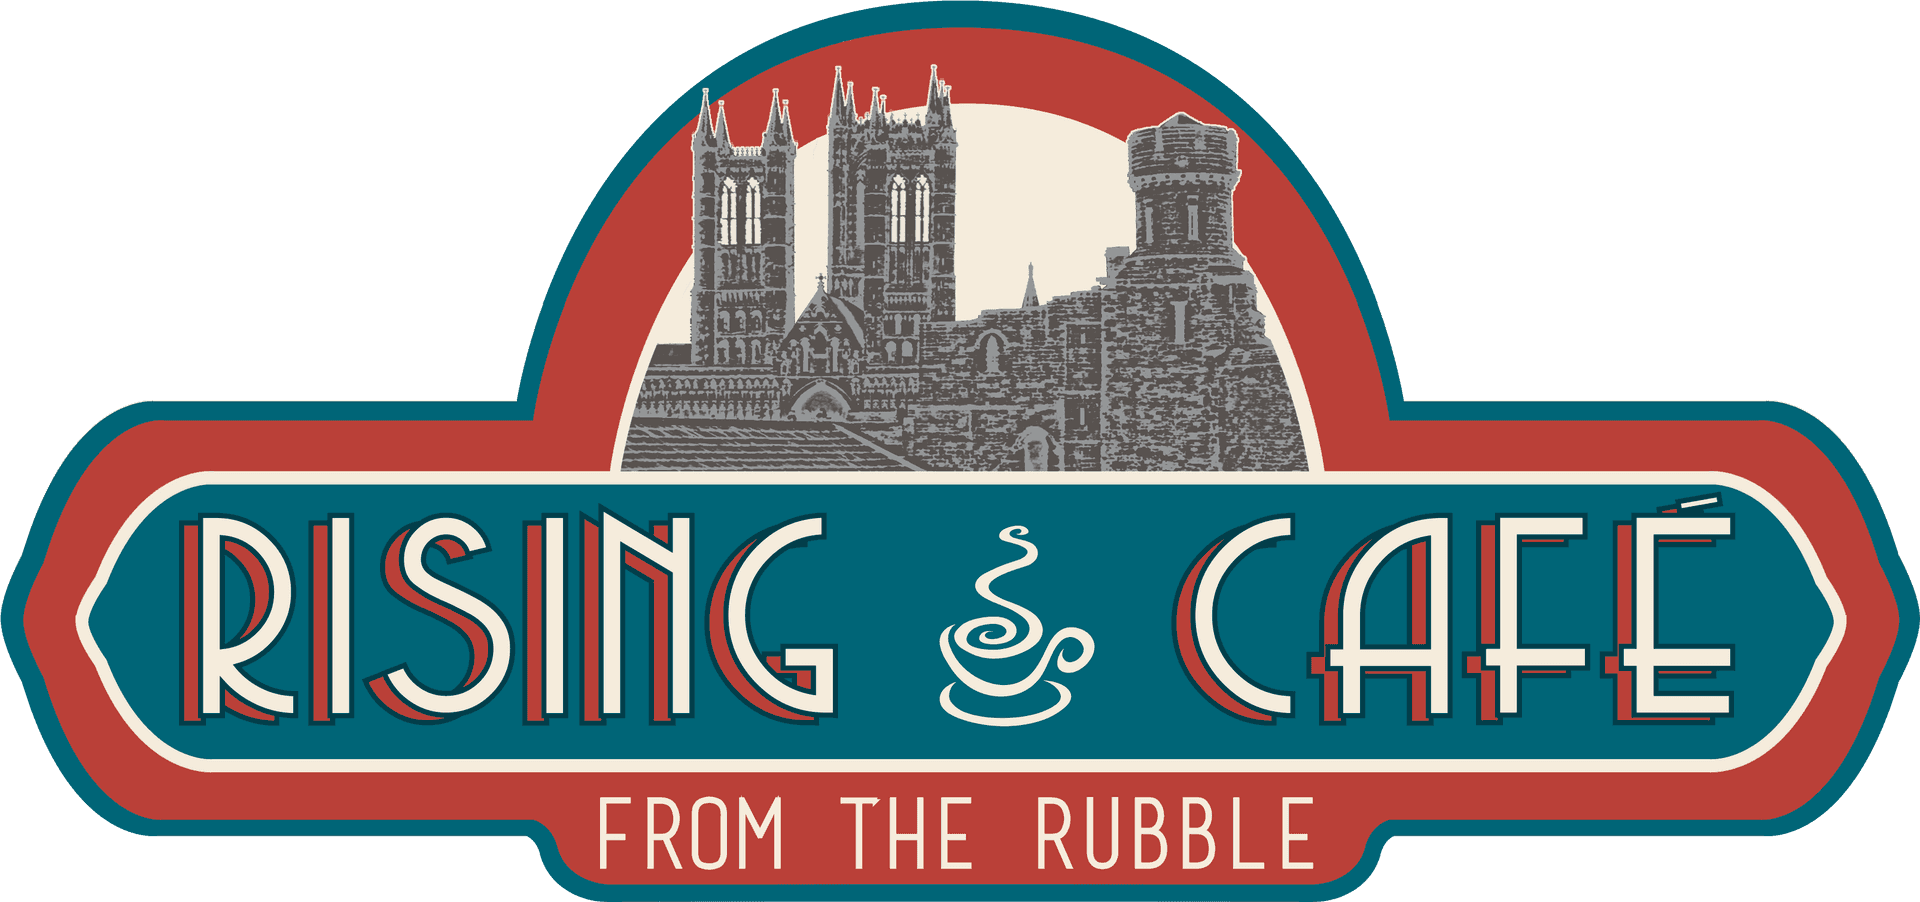 Rising Cafe Logo PNG image